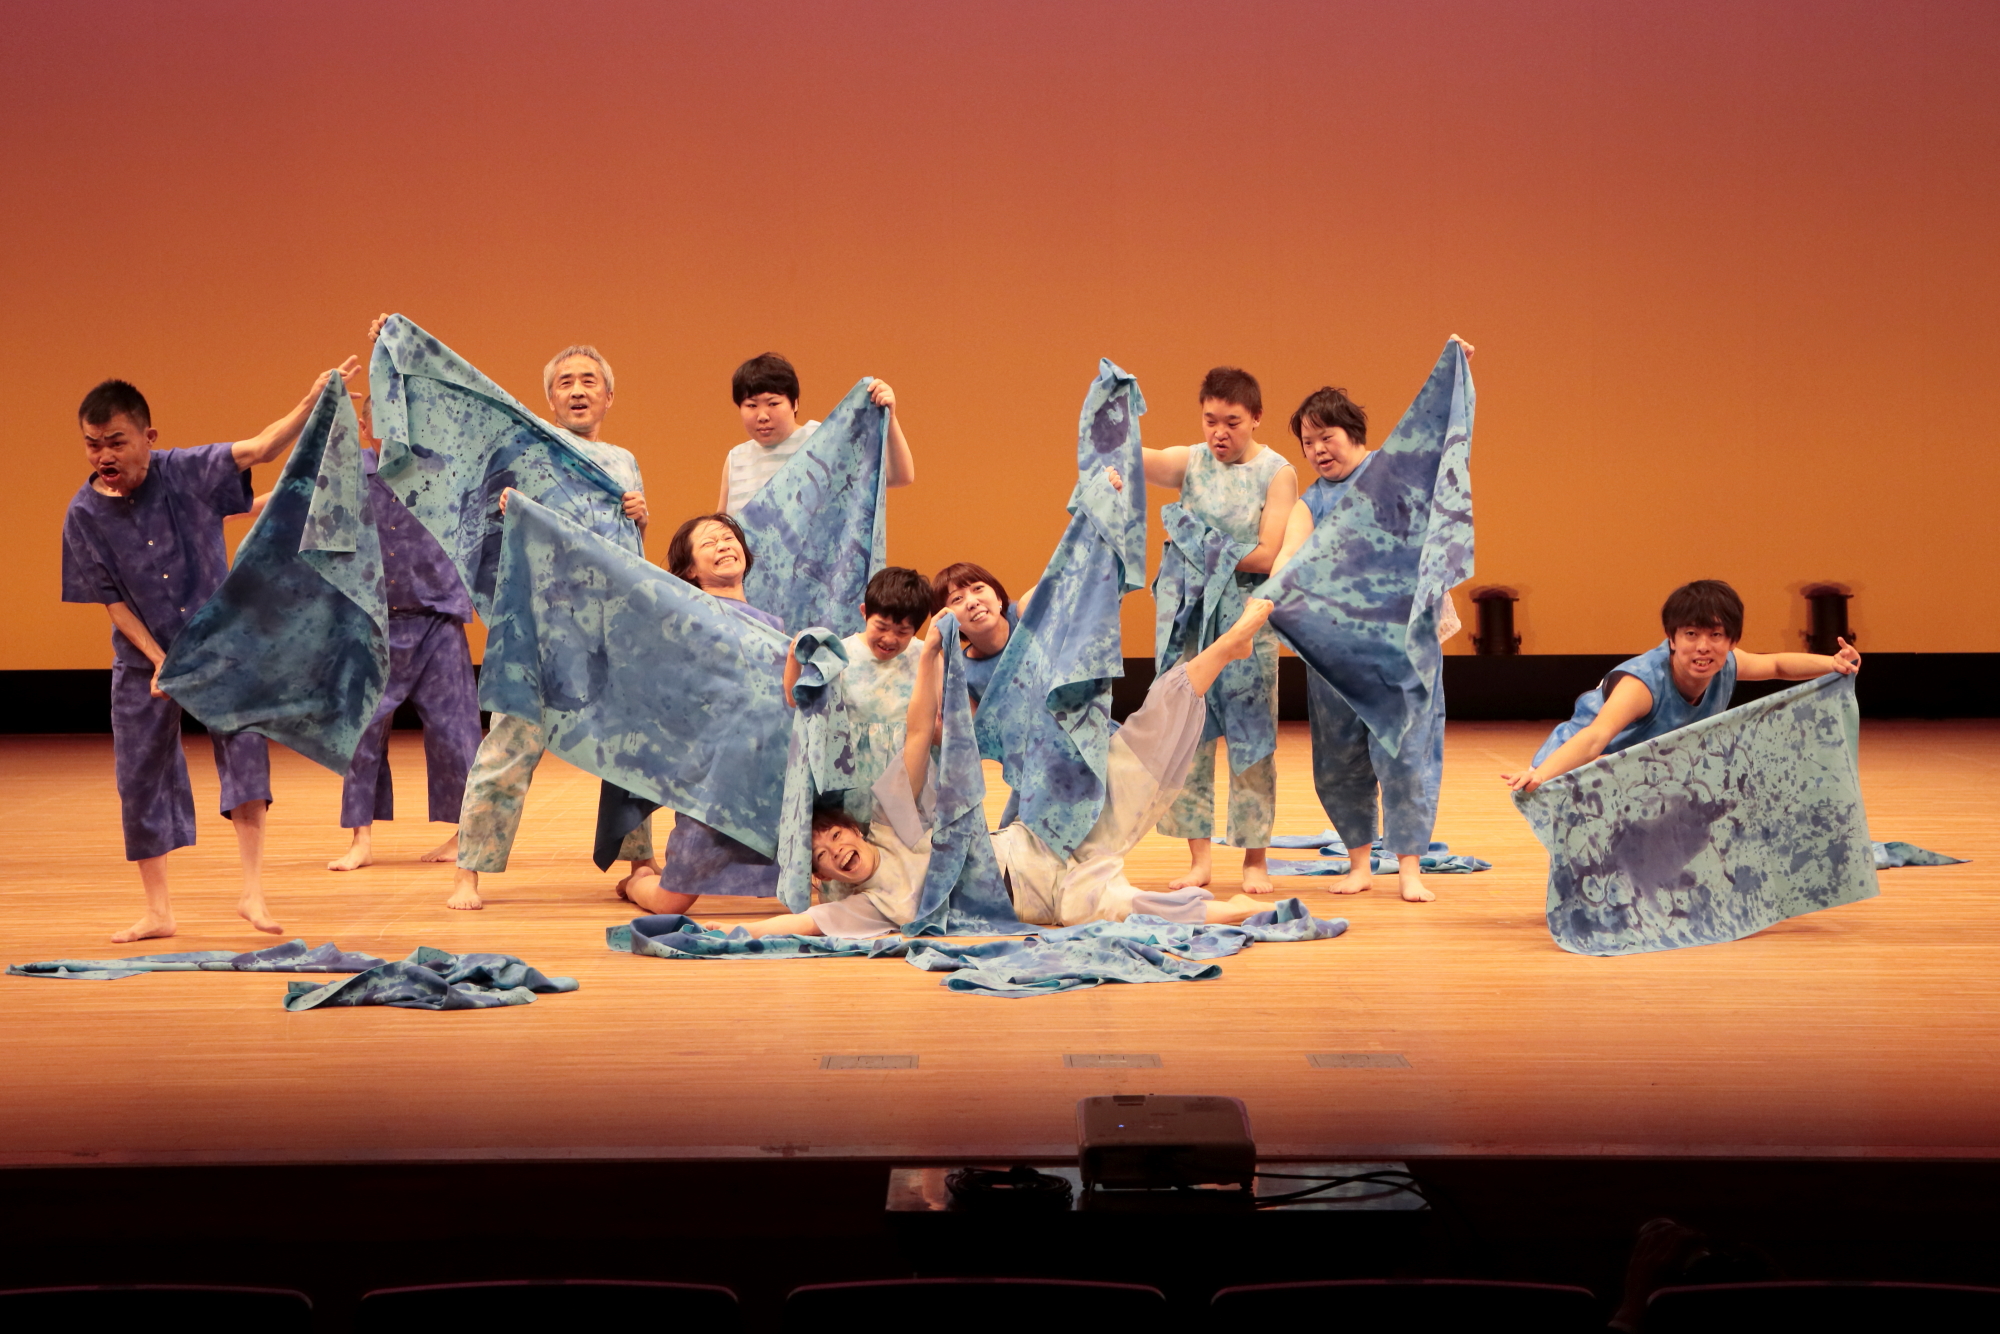 ライトが当たった舞台の上で、絞り染めの布を広げている人たちのダンスの様子の写真